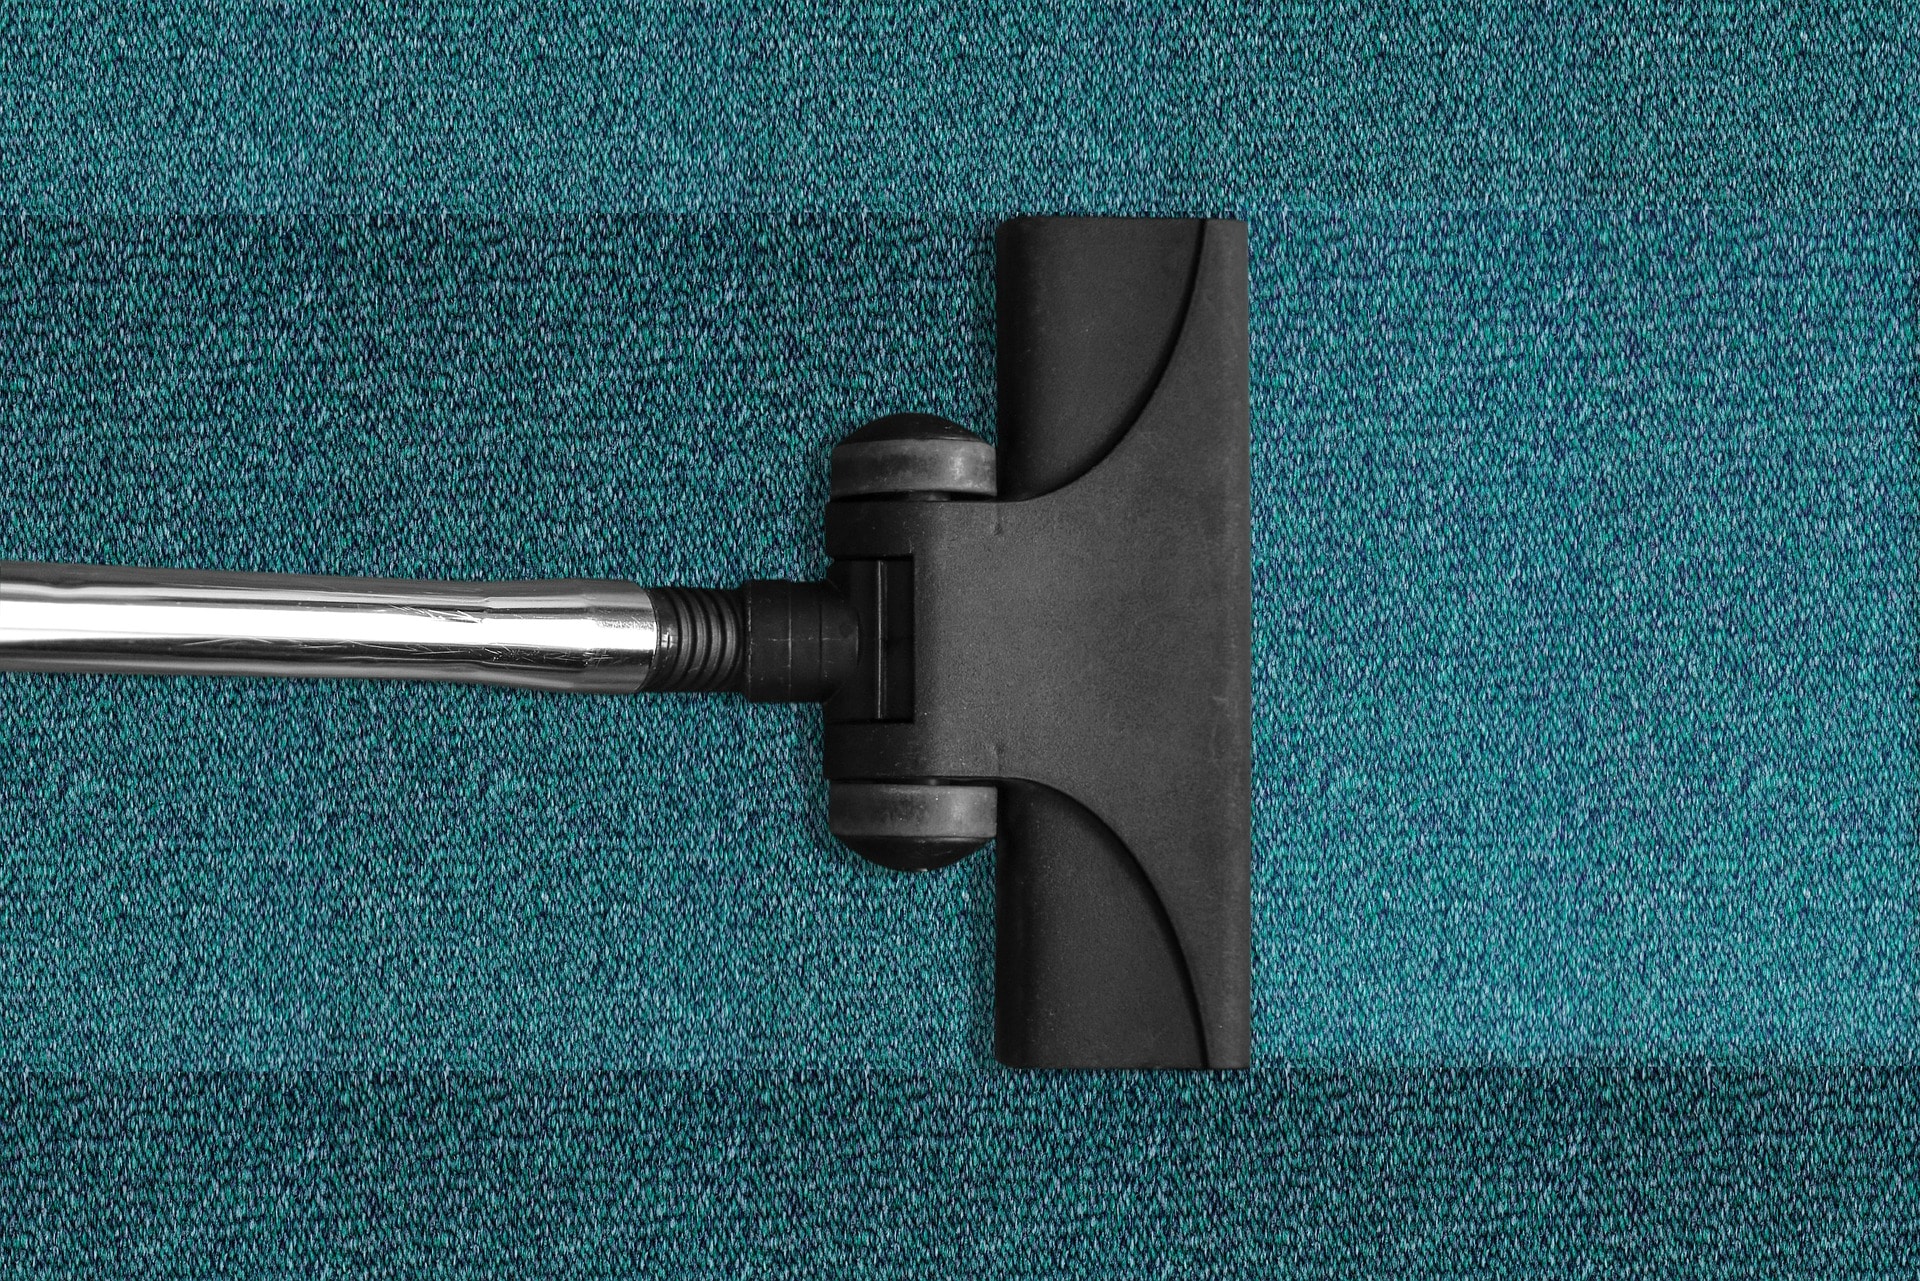 Vacuum Cleaner Cleaning Carpet in Ellicott City